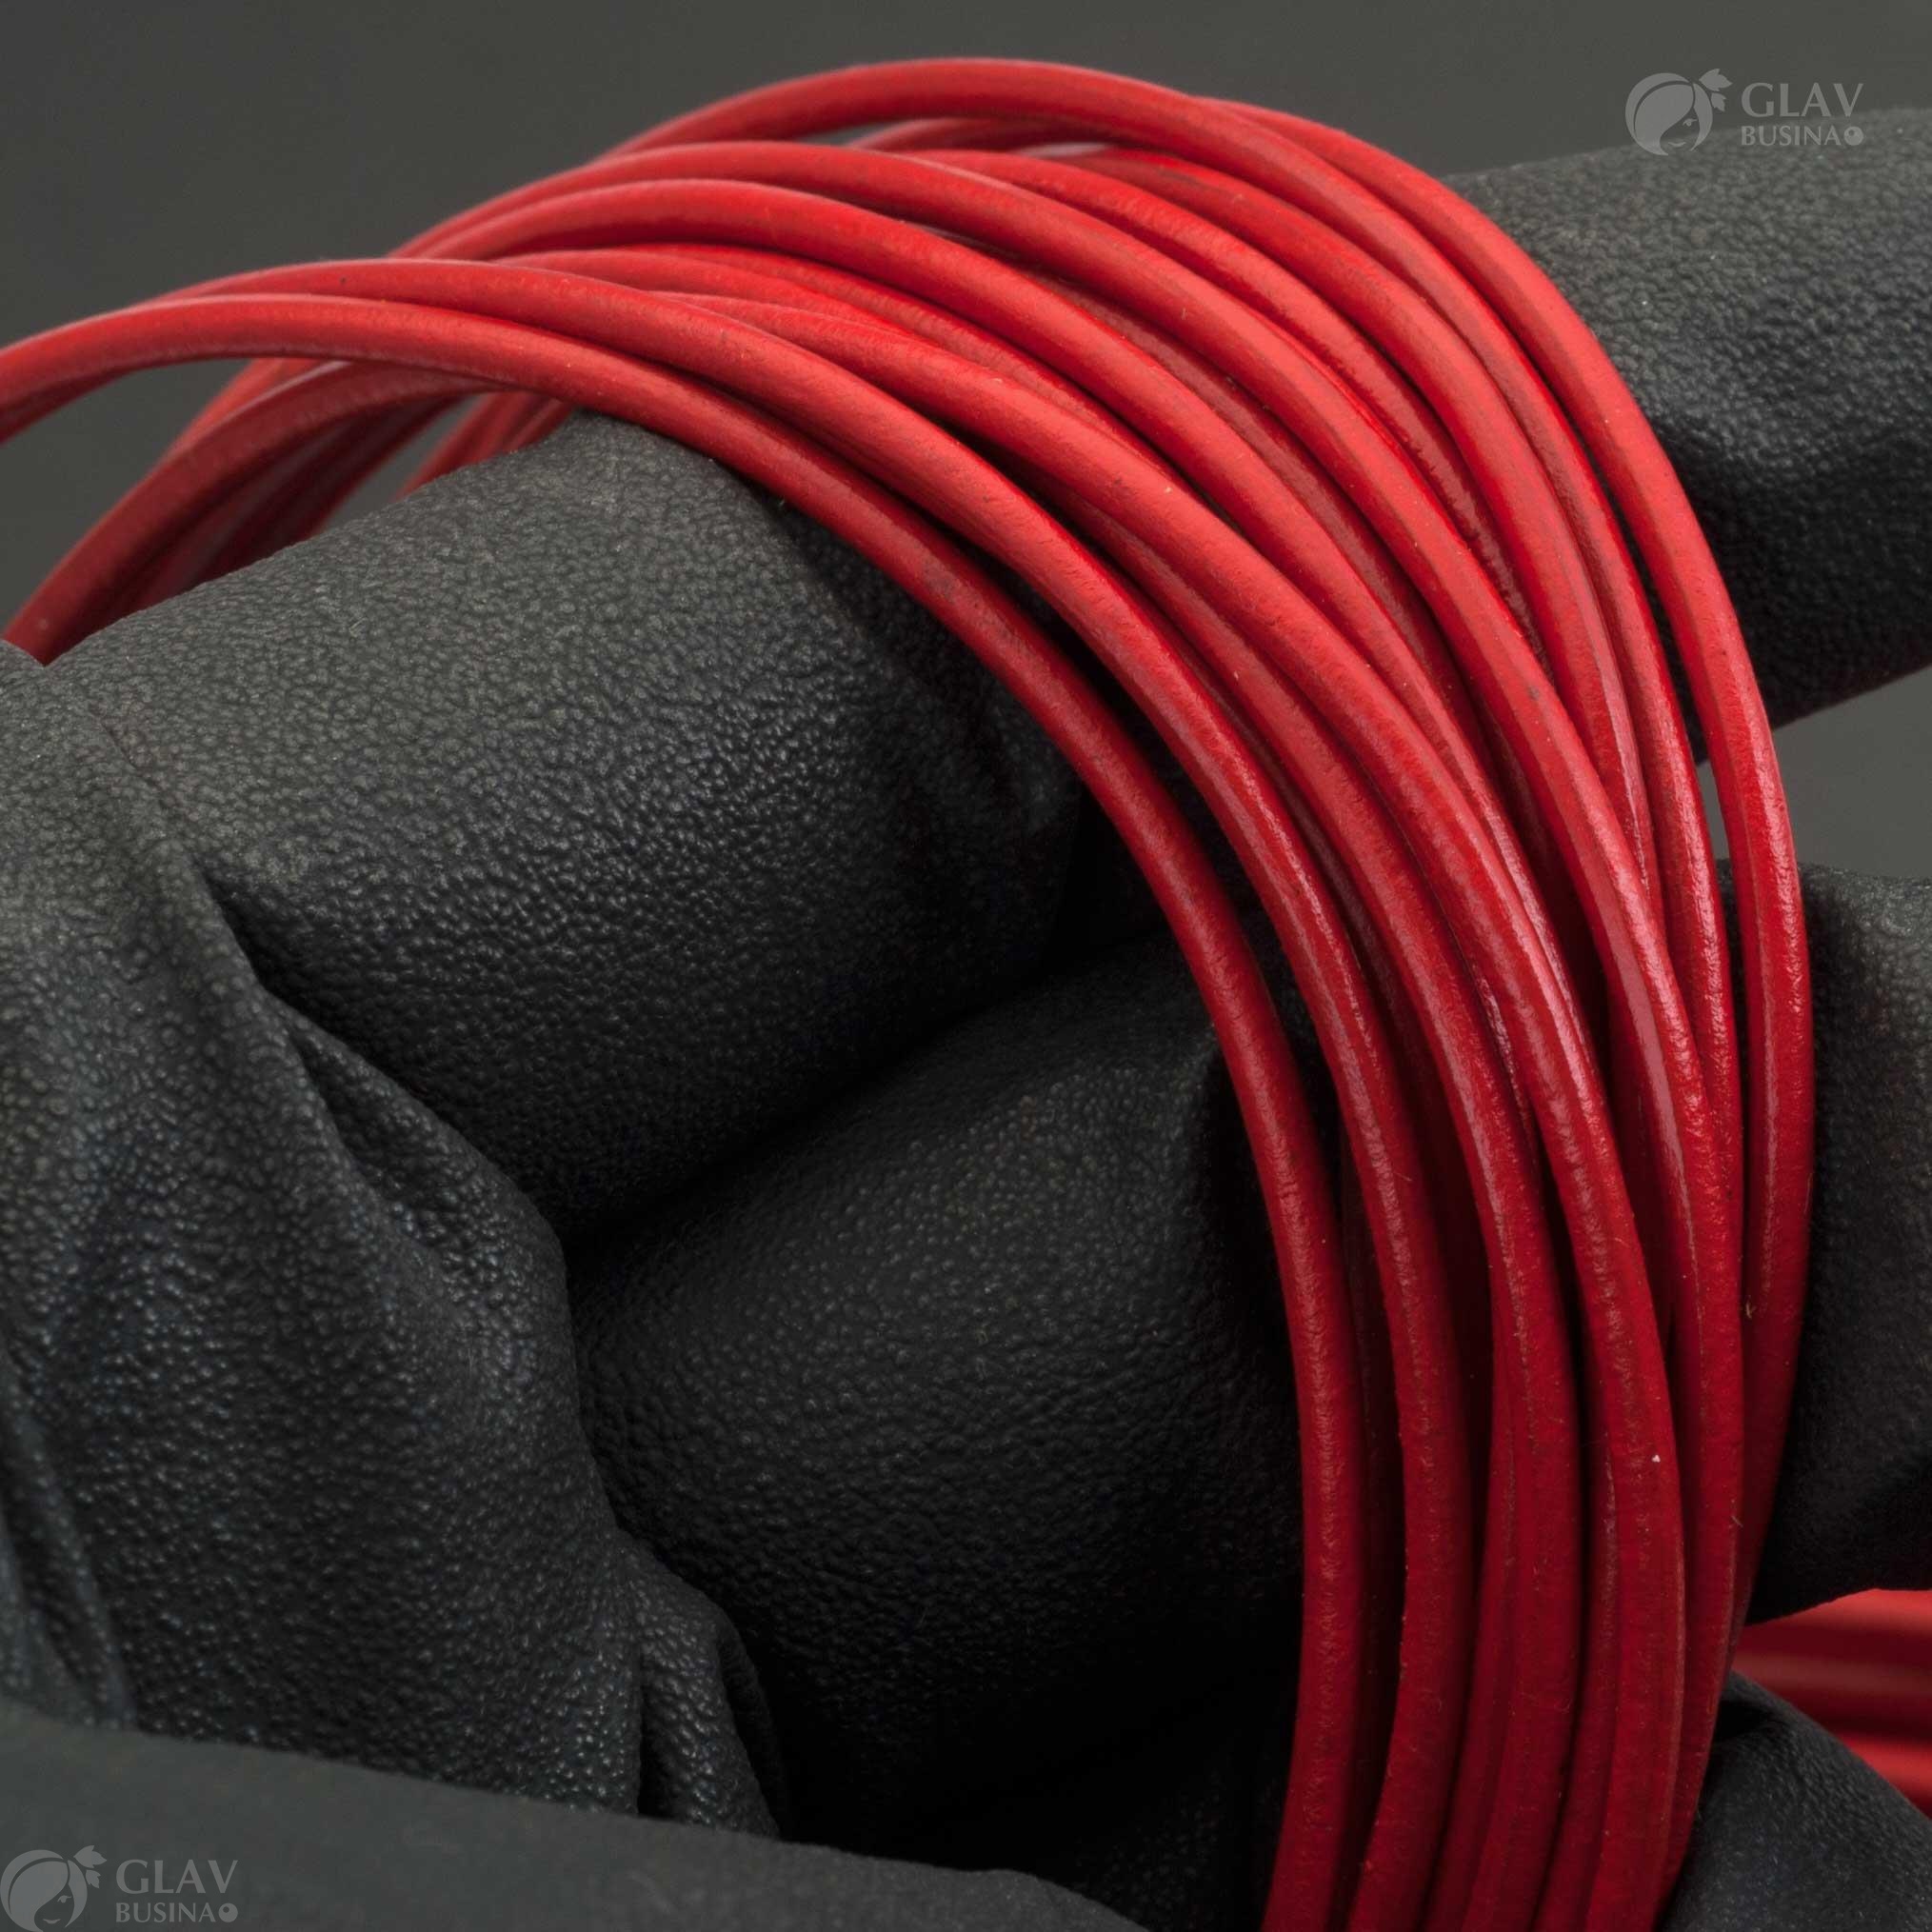 Круглый глянцевый кожаный шнур красного цвета, 2мм толщина, для кулонов и браслетов, продается на метраж.